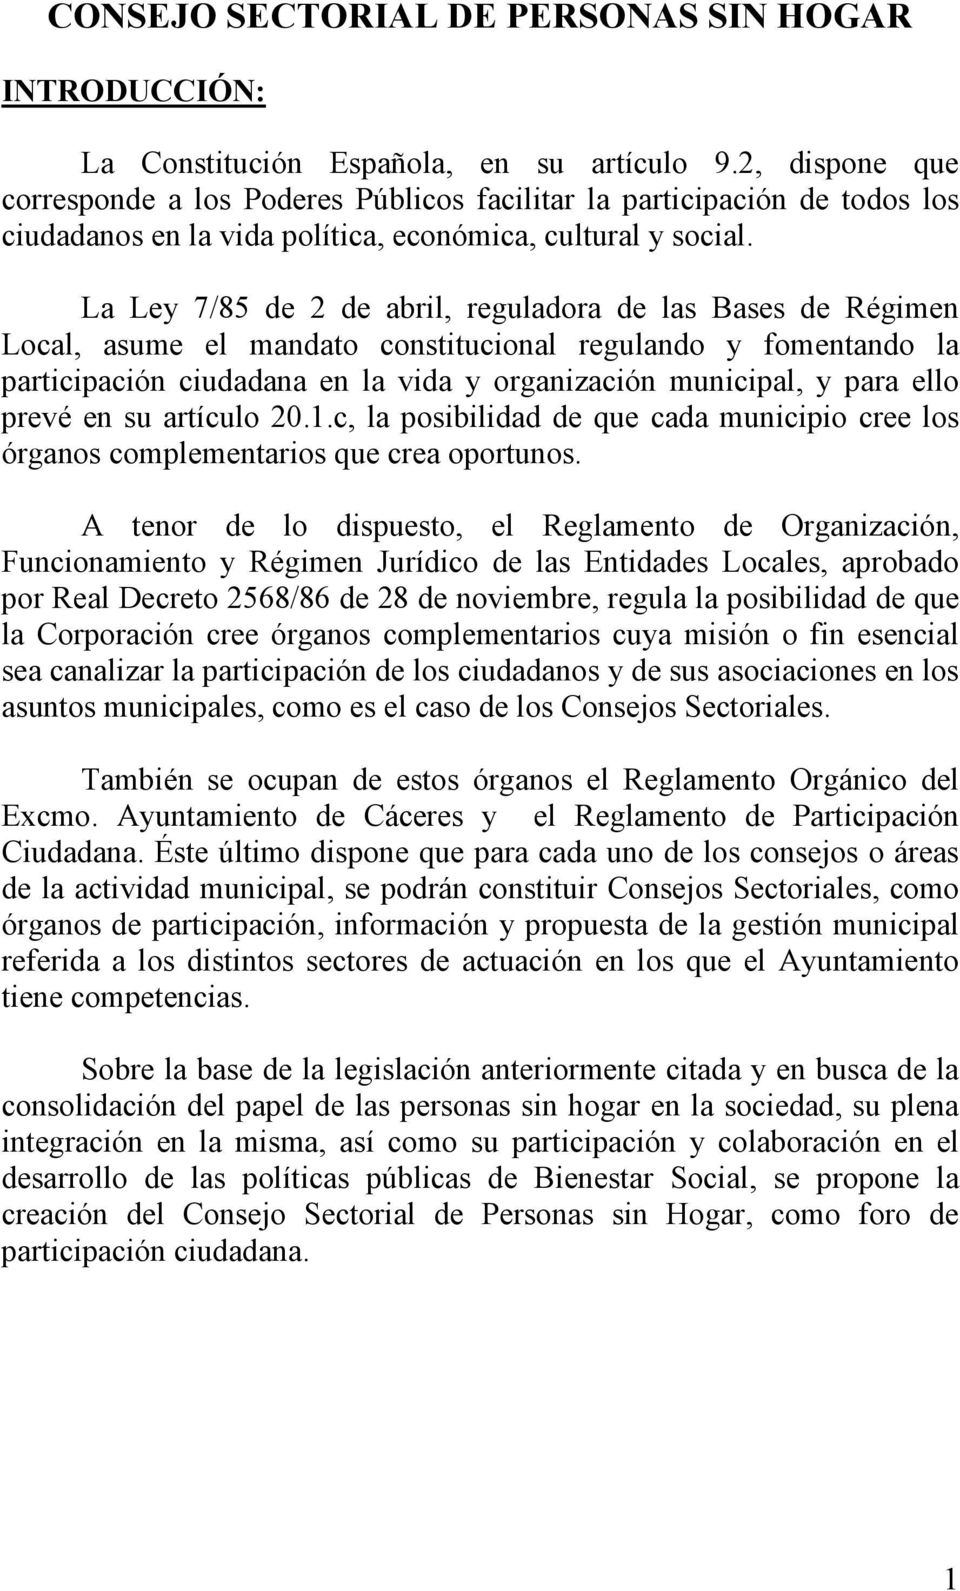 La Ley 7/85 de 2 de abril, reguladora de las Bases de Régimen Local, asume el mandato constitucional regulando y fomentando la participación ciudadana en la vida y organización municipal, y para ello